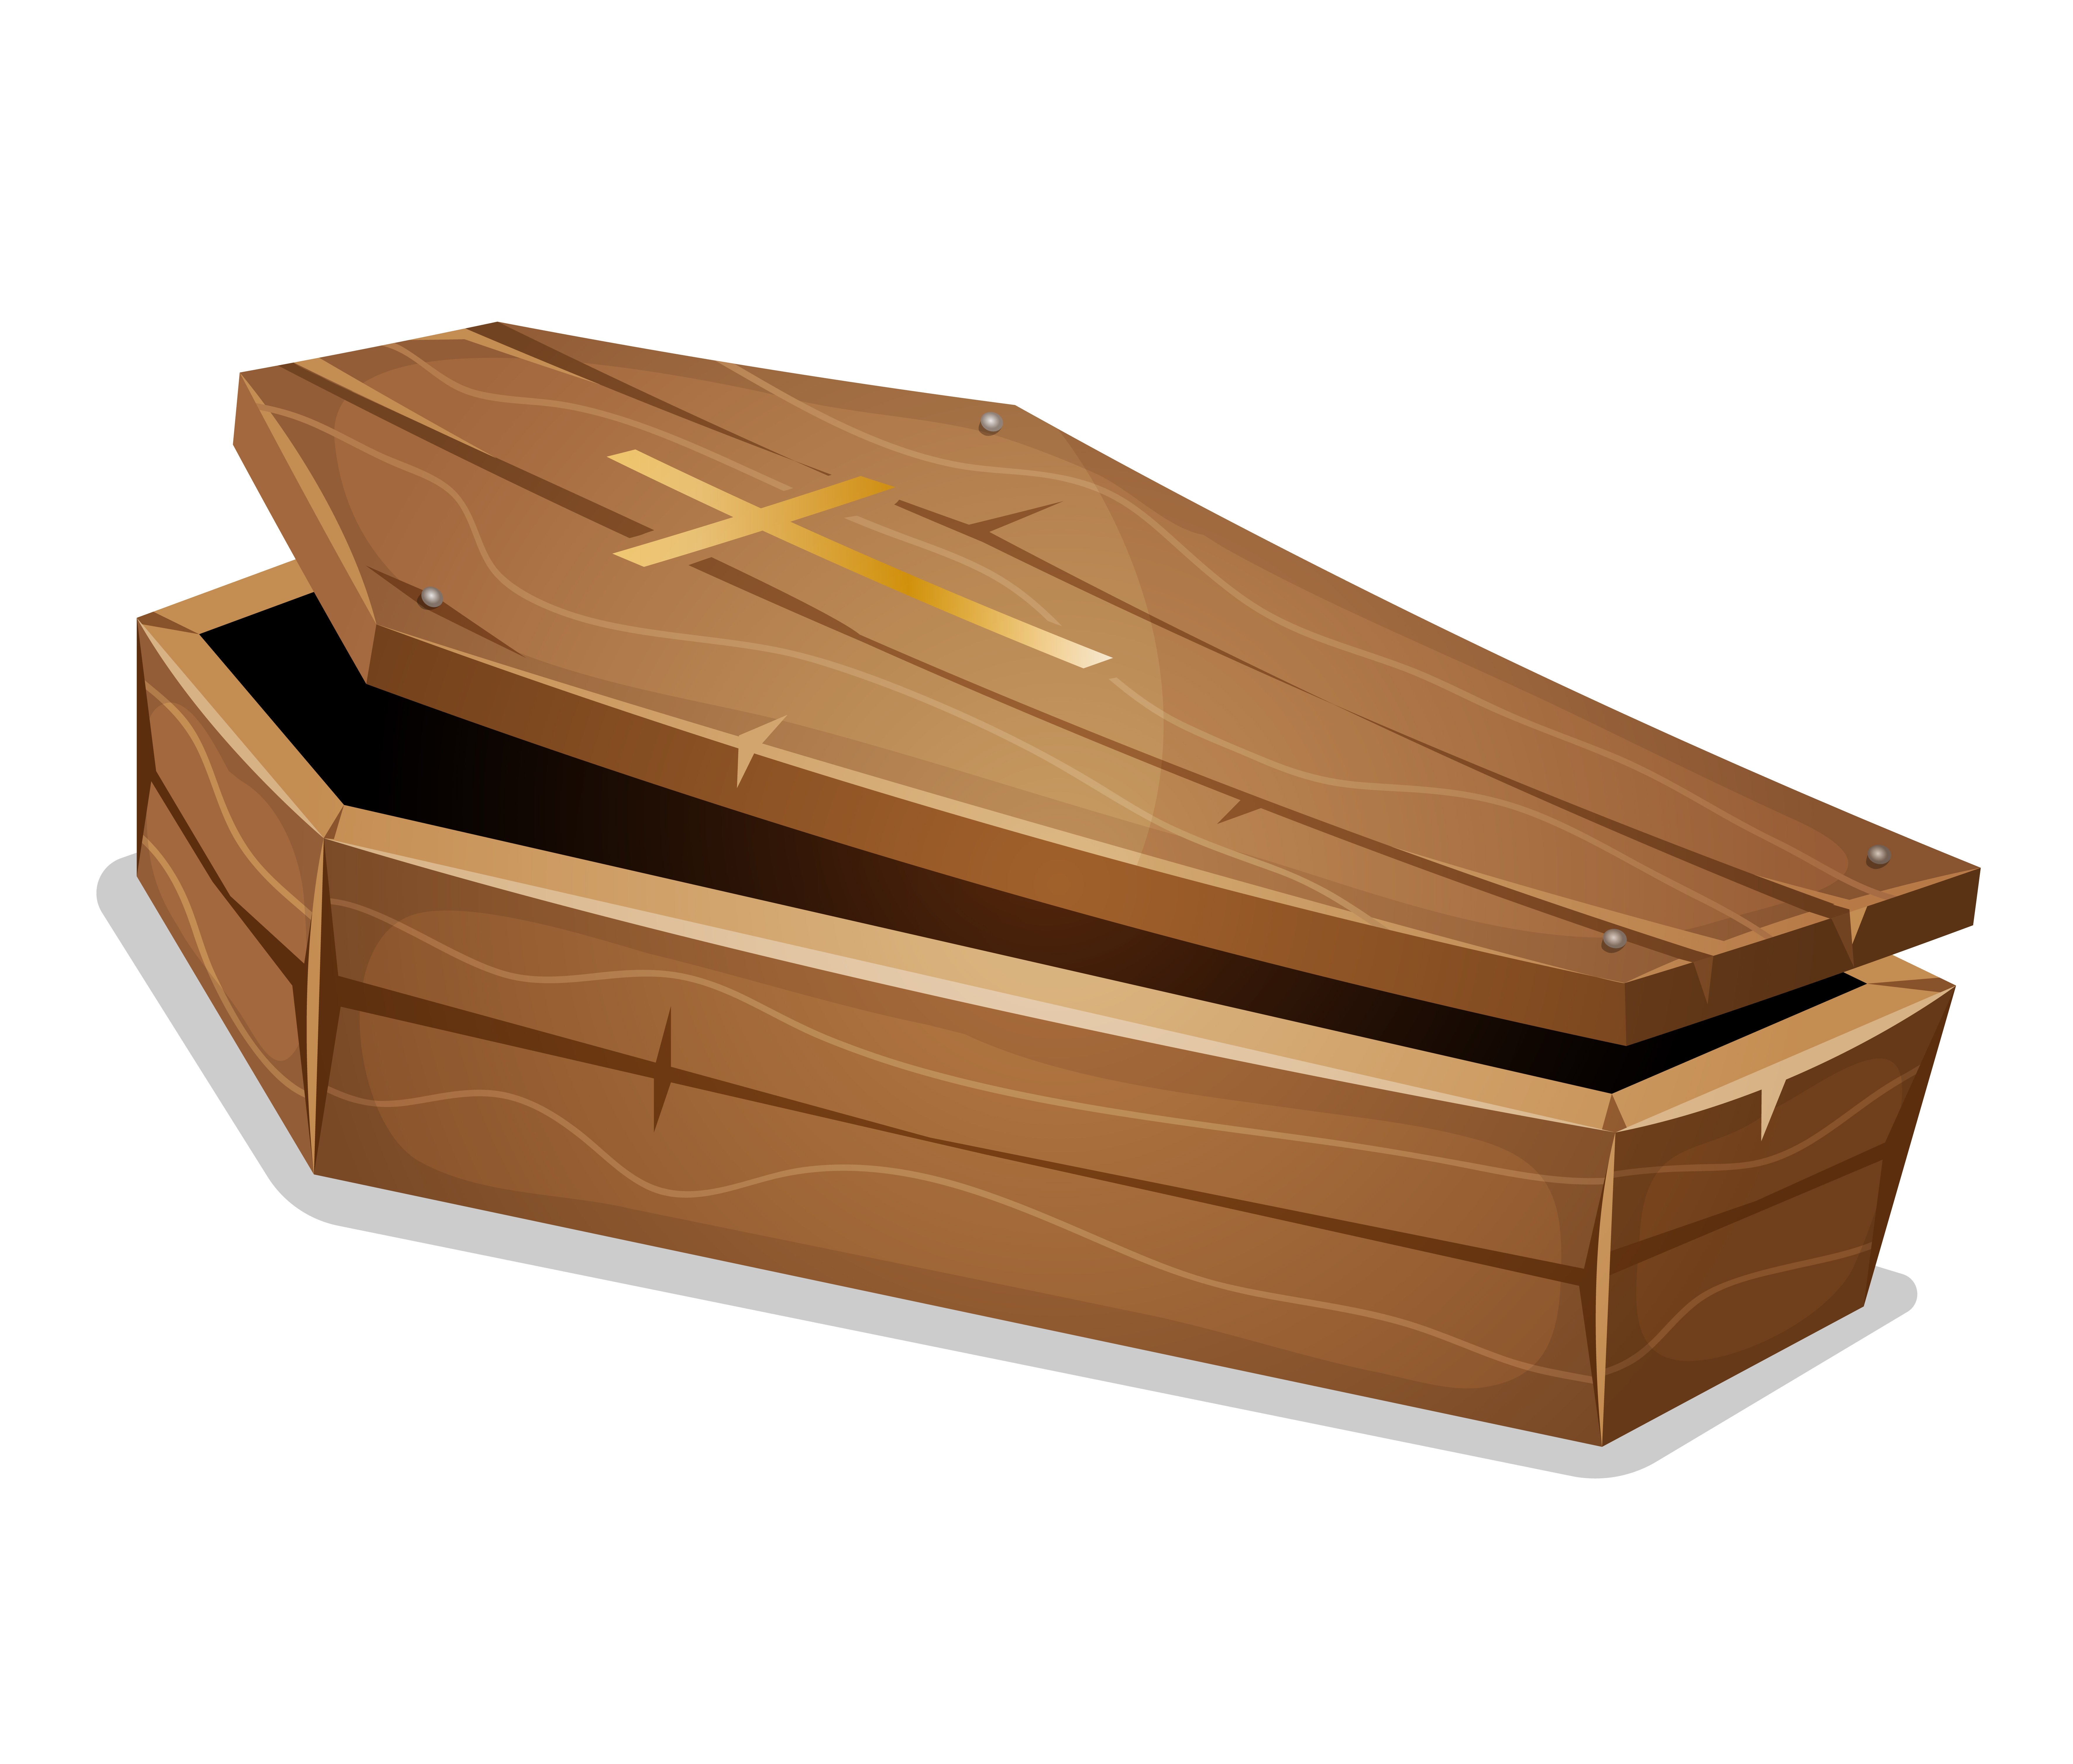 Coffin download. Открытый деревянный гроб. Гробы мультяшные. Деревянный гроб на белом фоне. Гроб мультяшный открытый.